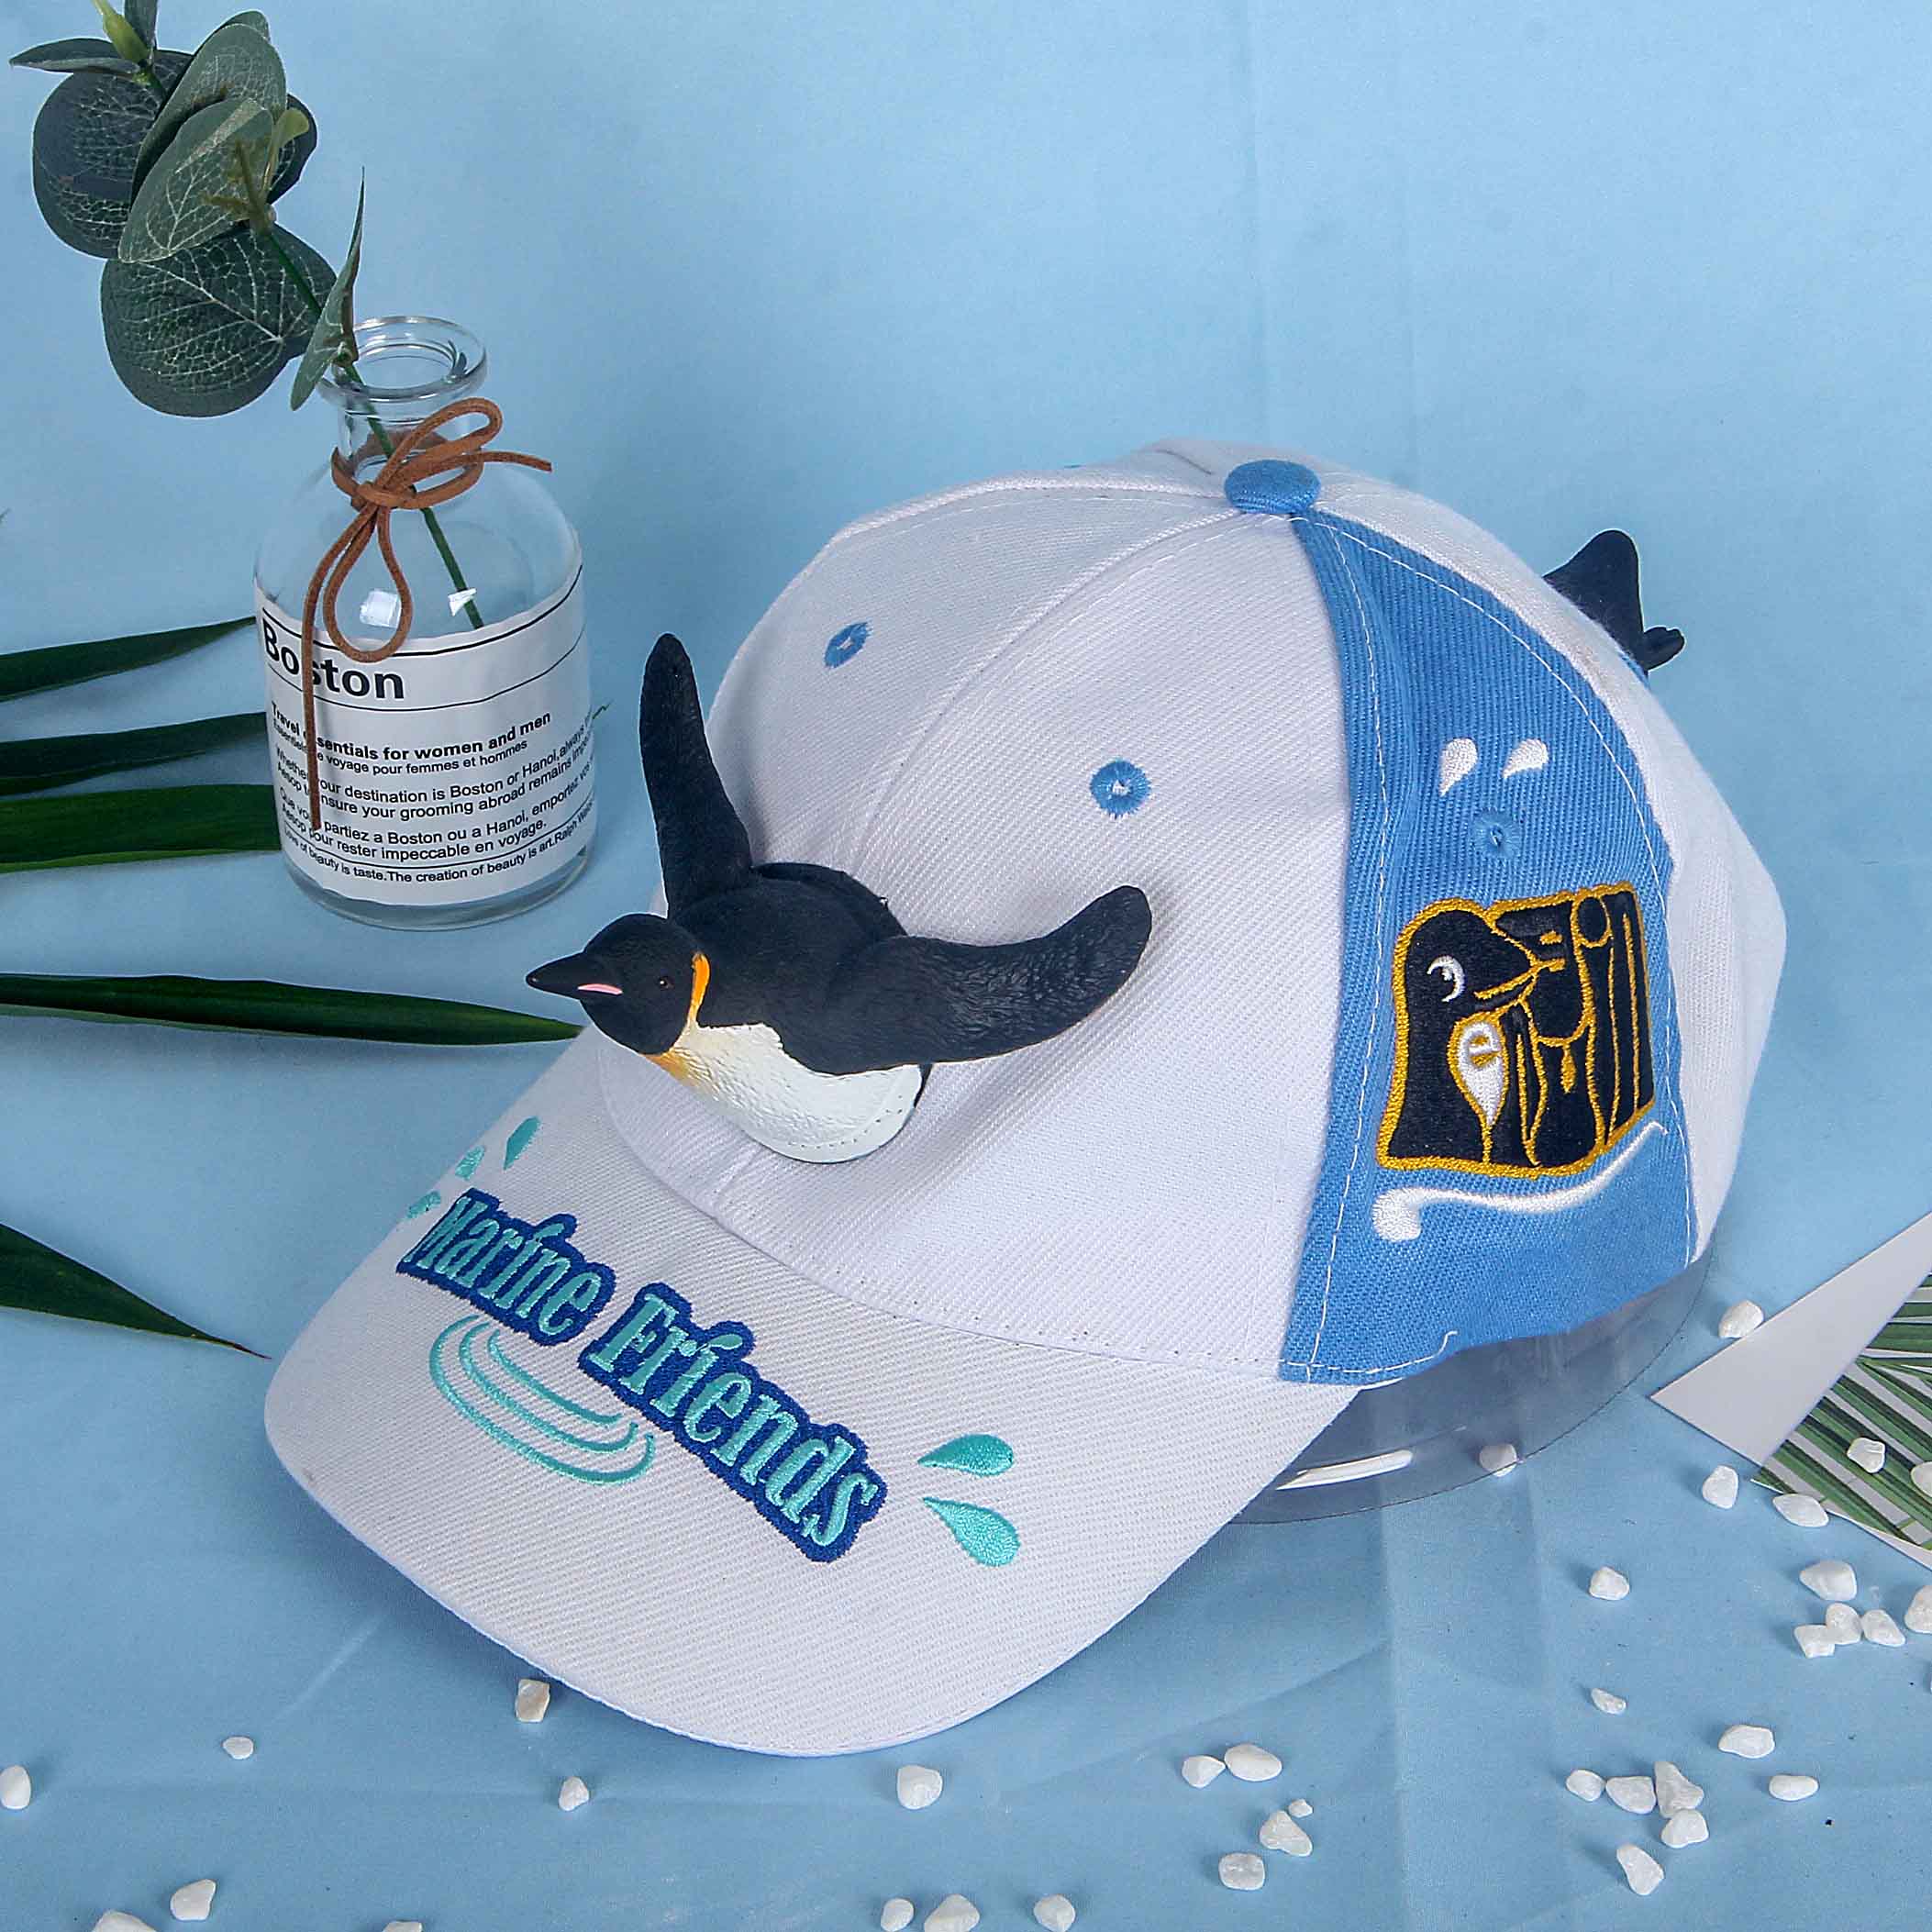 出口日本欧洲广州珠海长隆海洋王国纪念品鸭舌帽创意企鹅公仔帽子